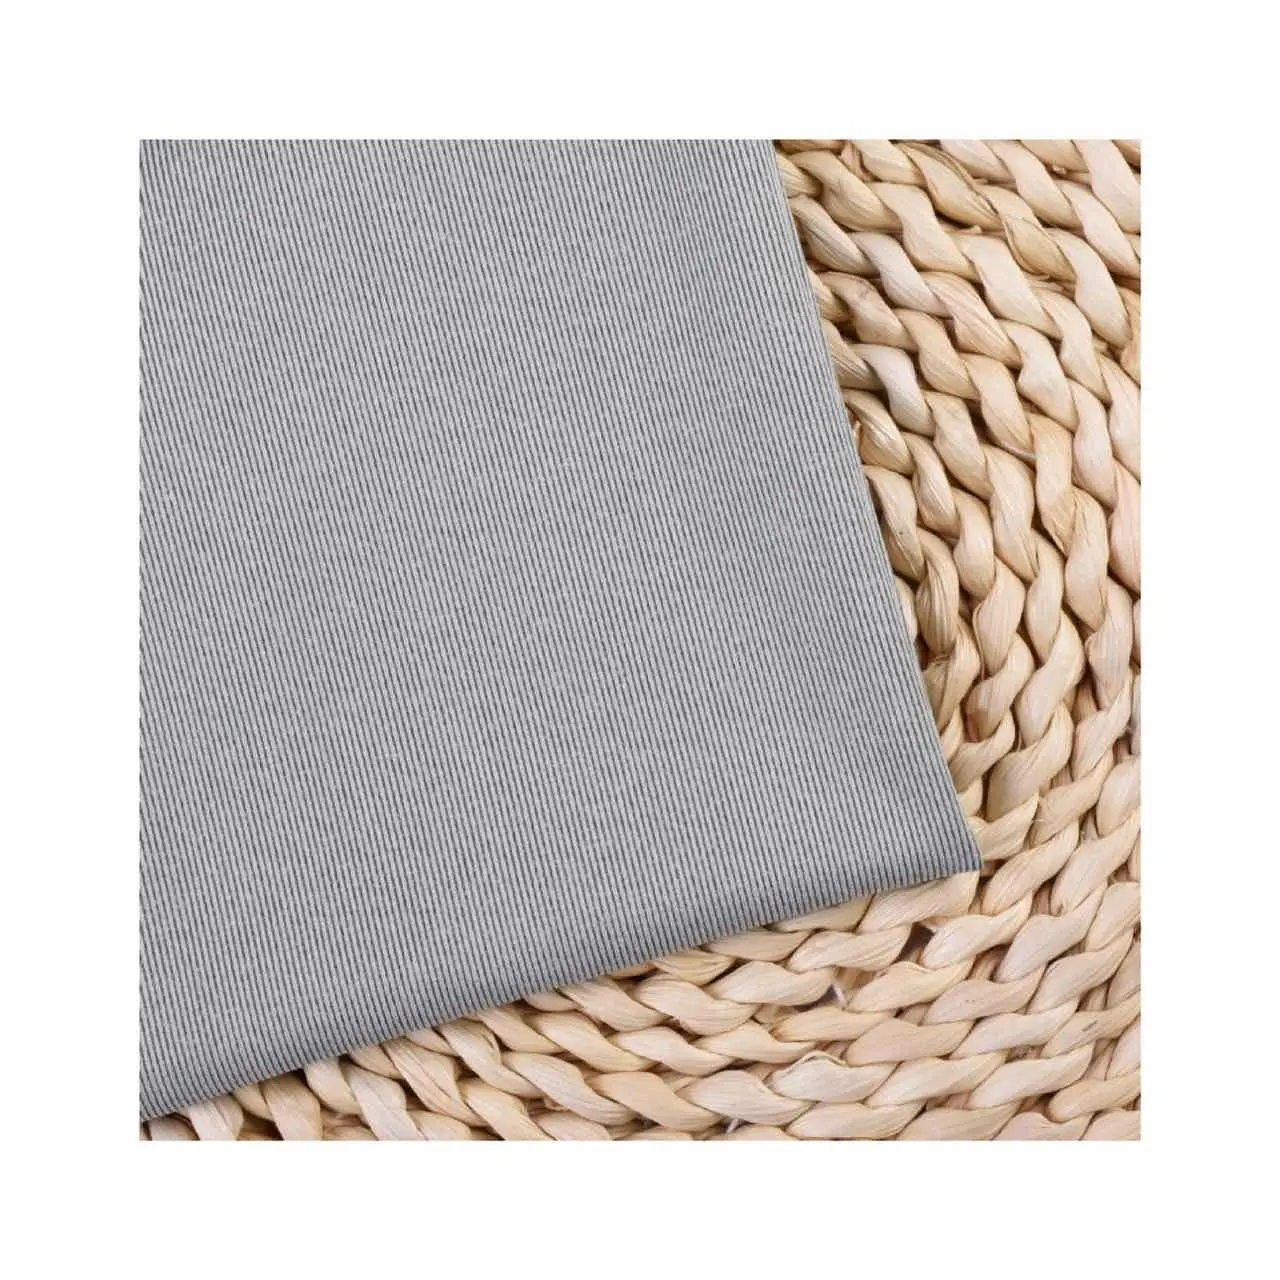 Katyon % 100% Polyester Polar Polar termal örme kumaş boyalı mikro kazak ipliği boyalı kumaş